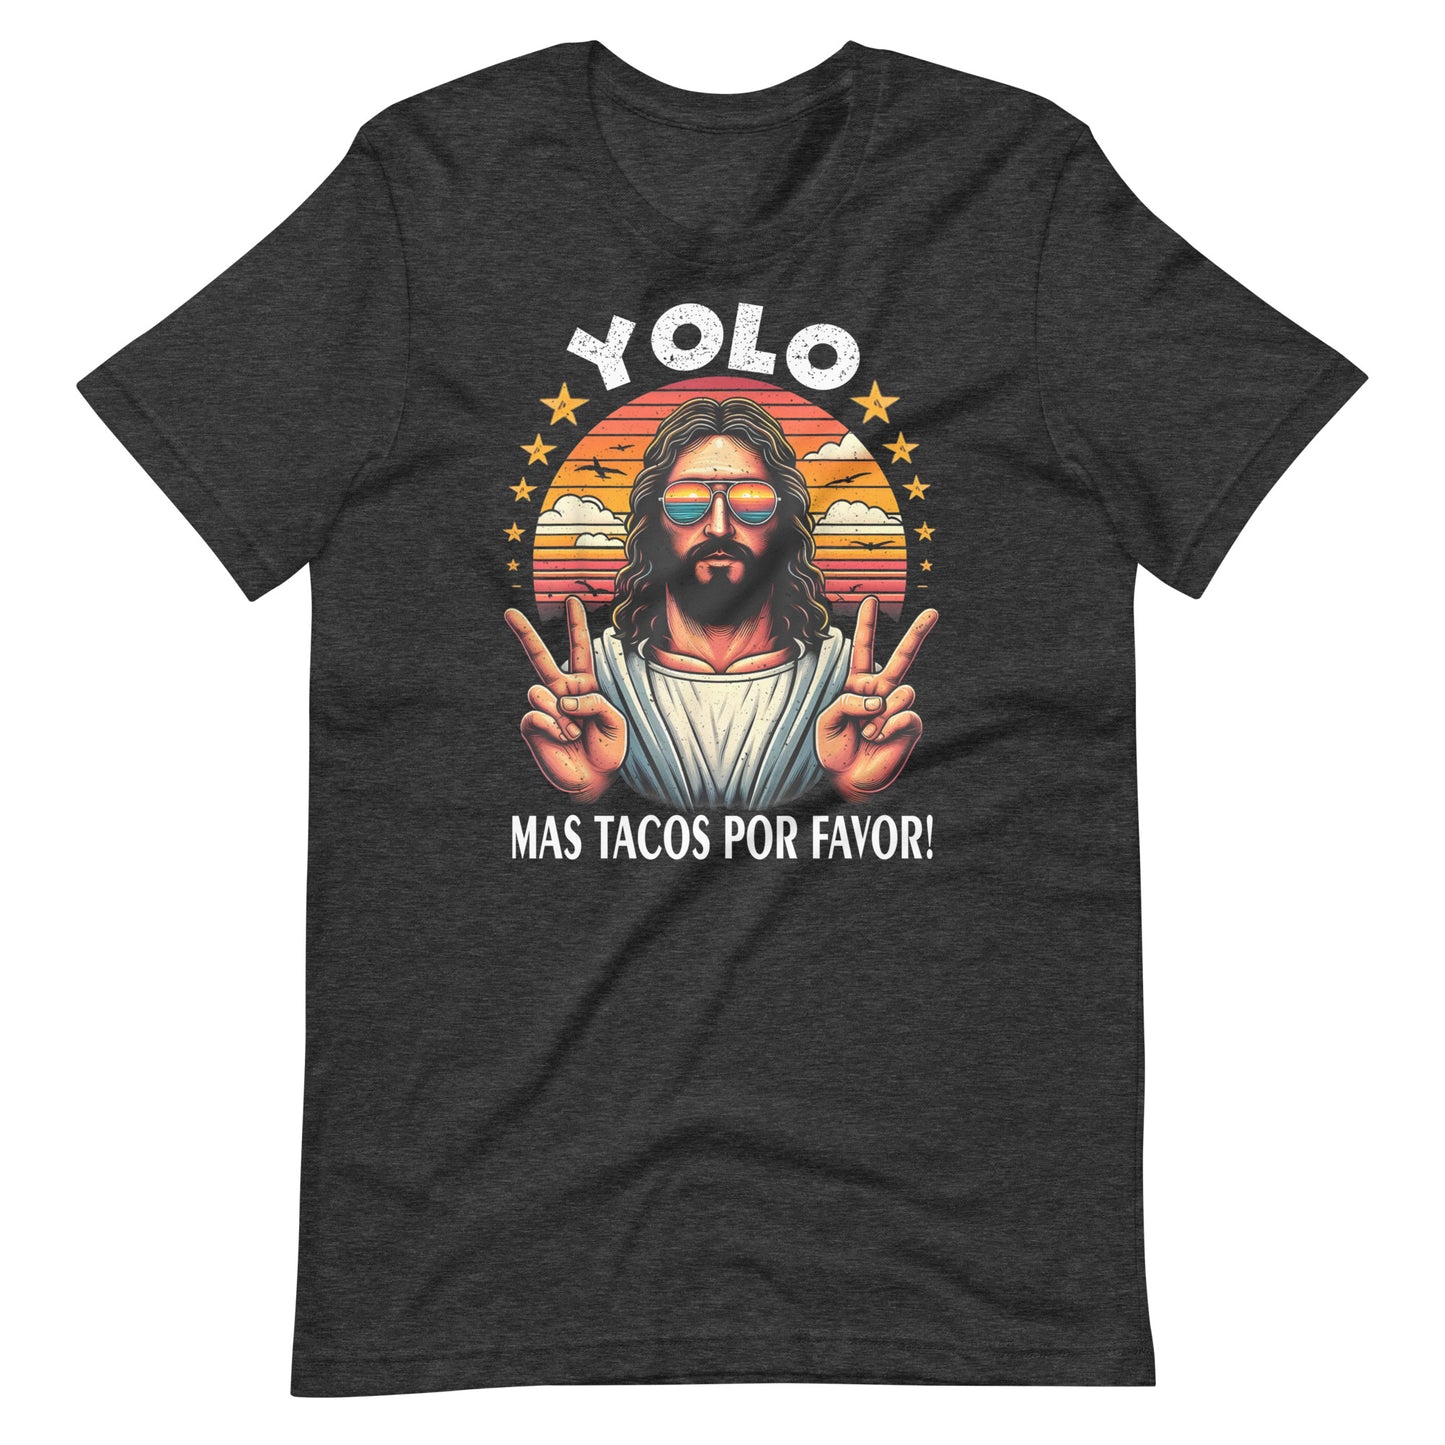 YOLO Mas Tacos Por Favor T-Shirt for Taco Lovers